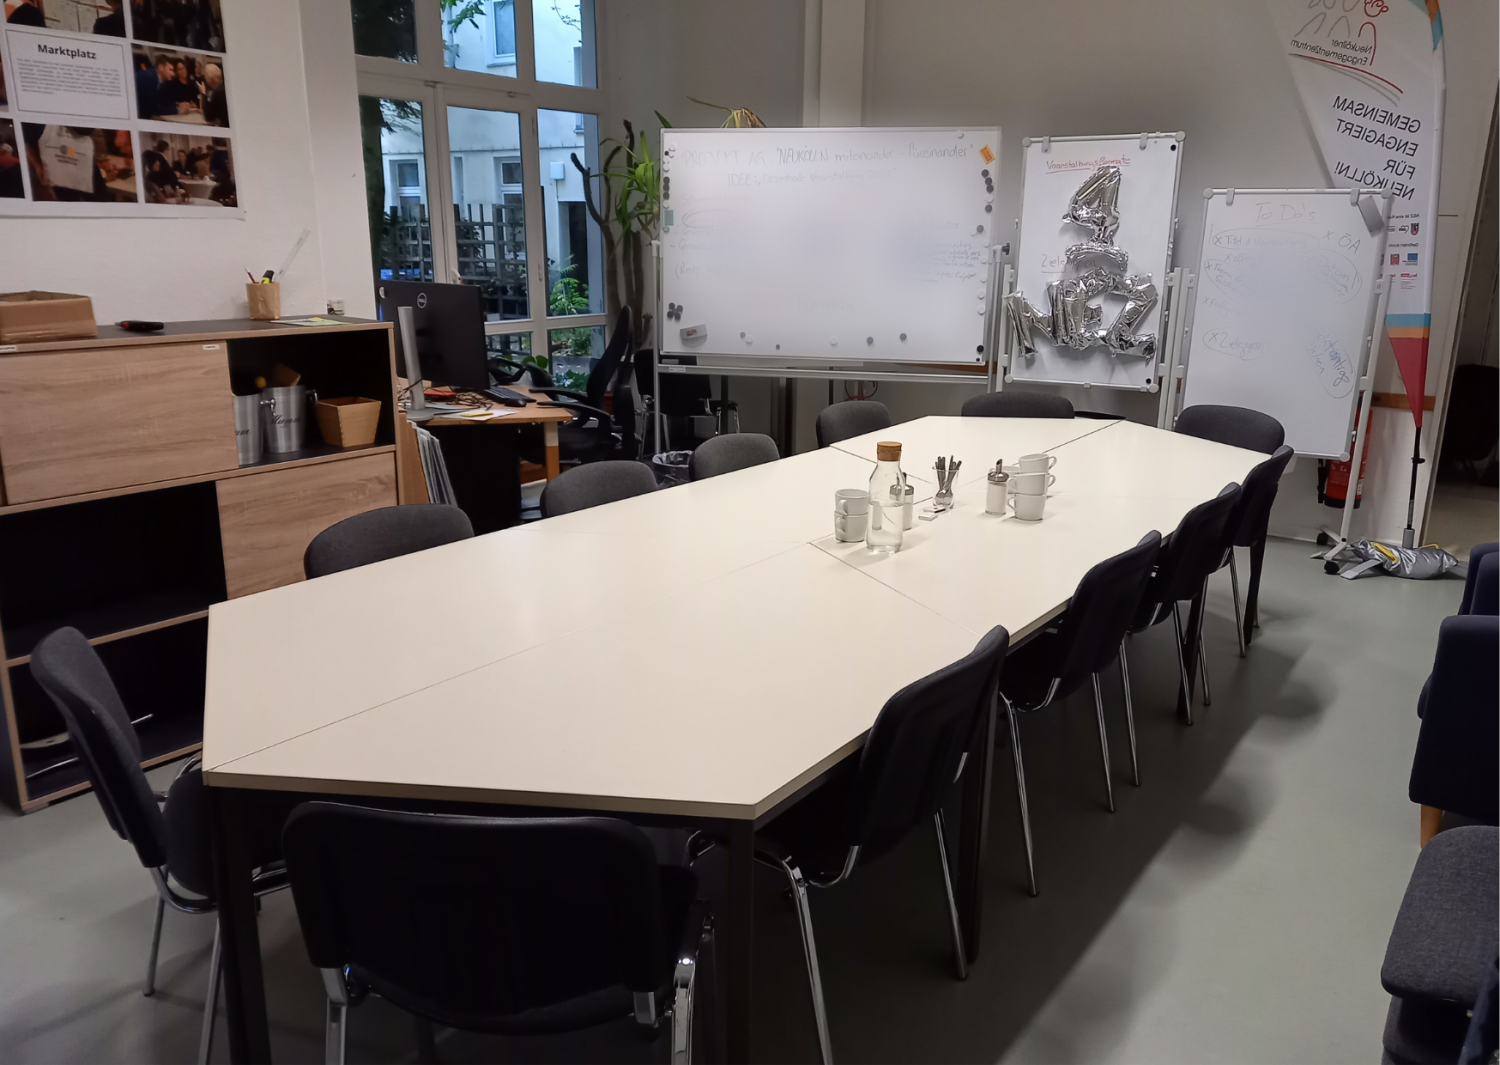 Seminarraum mit eckigem Tisch und Stühlen und Whiteboards, Flipcharts und Regalen im Hintergrund.